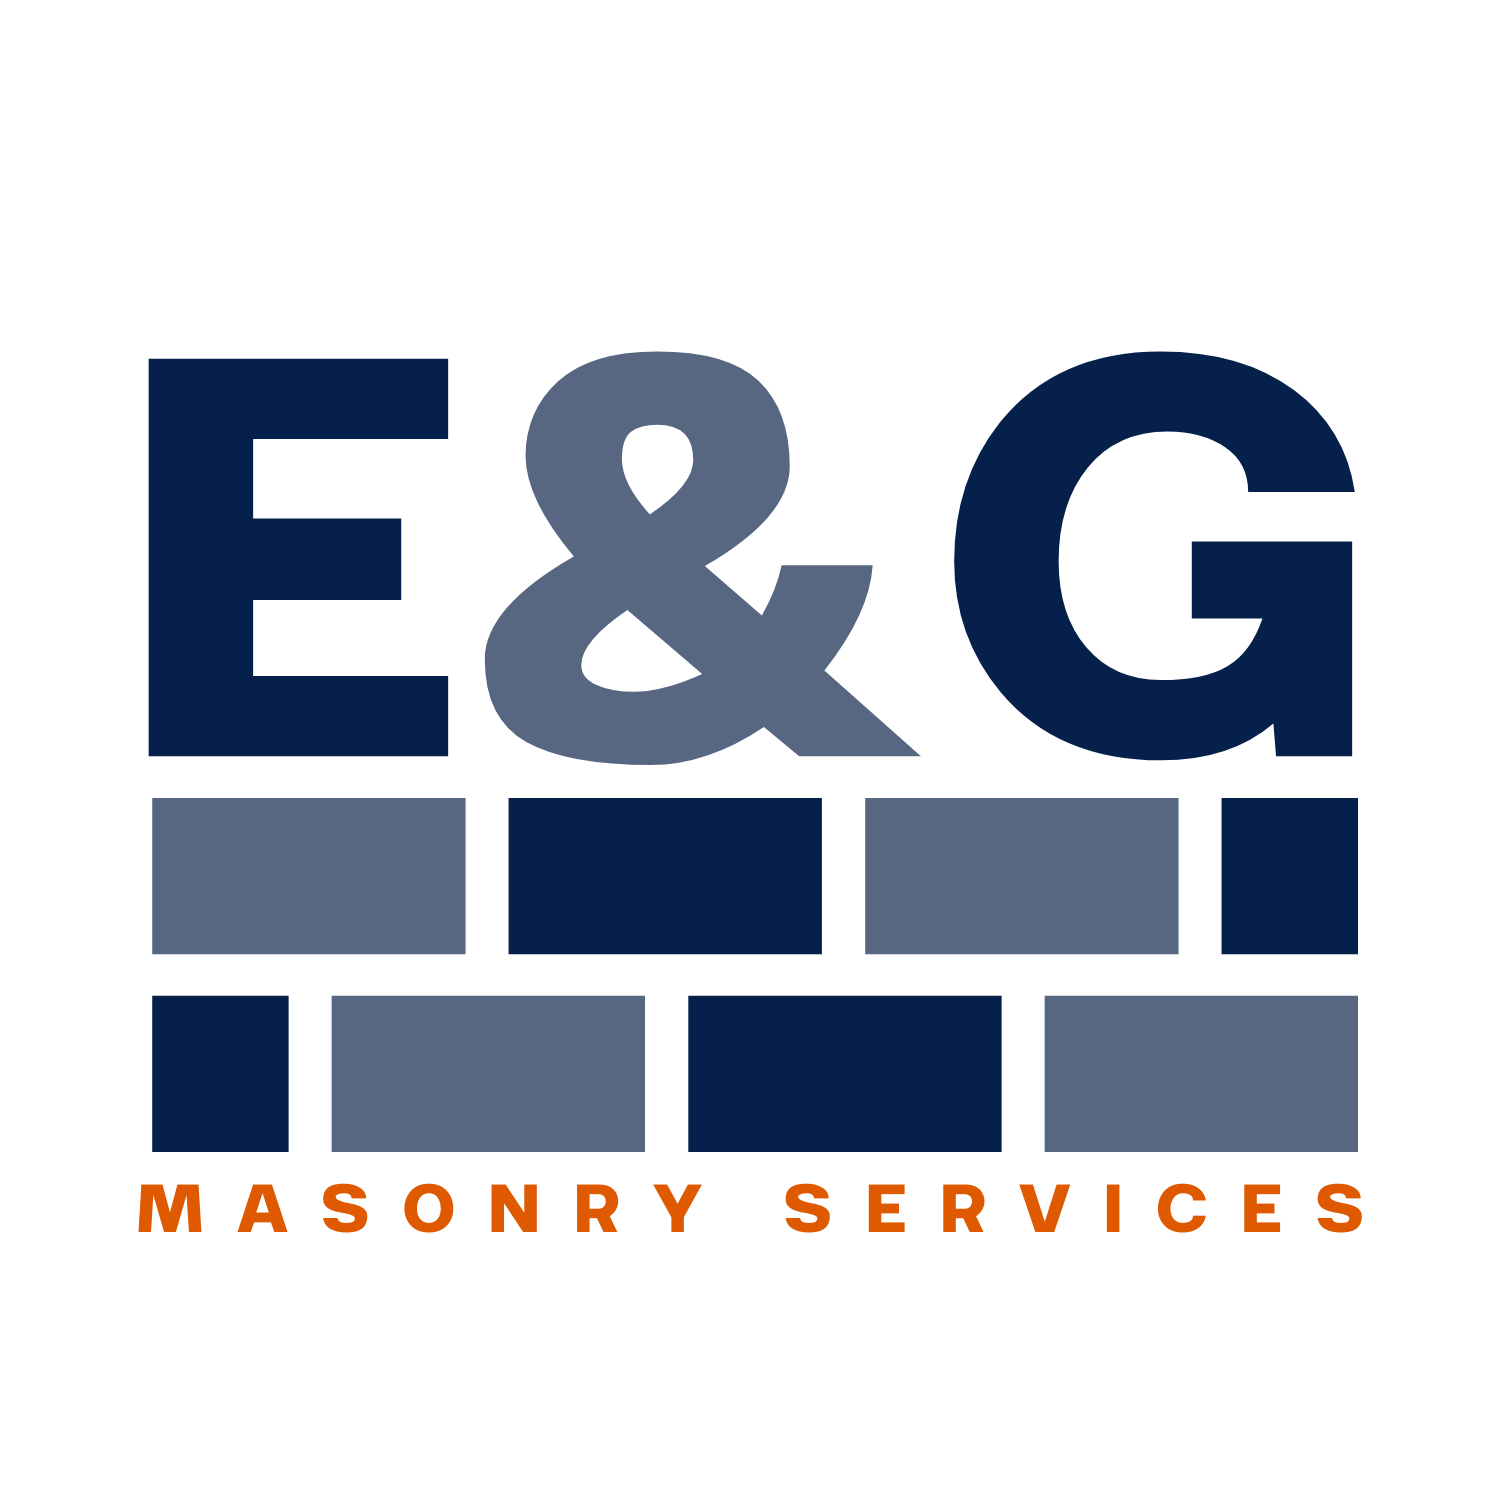 E&amp;G Masonry Services